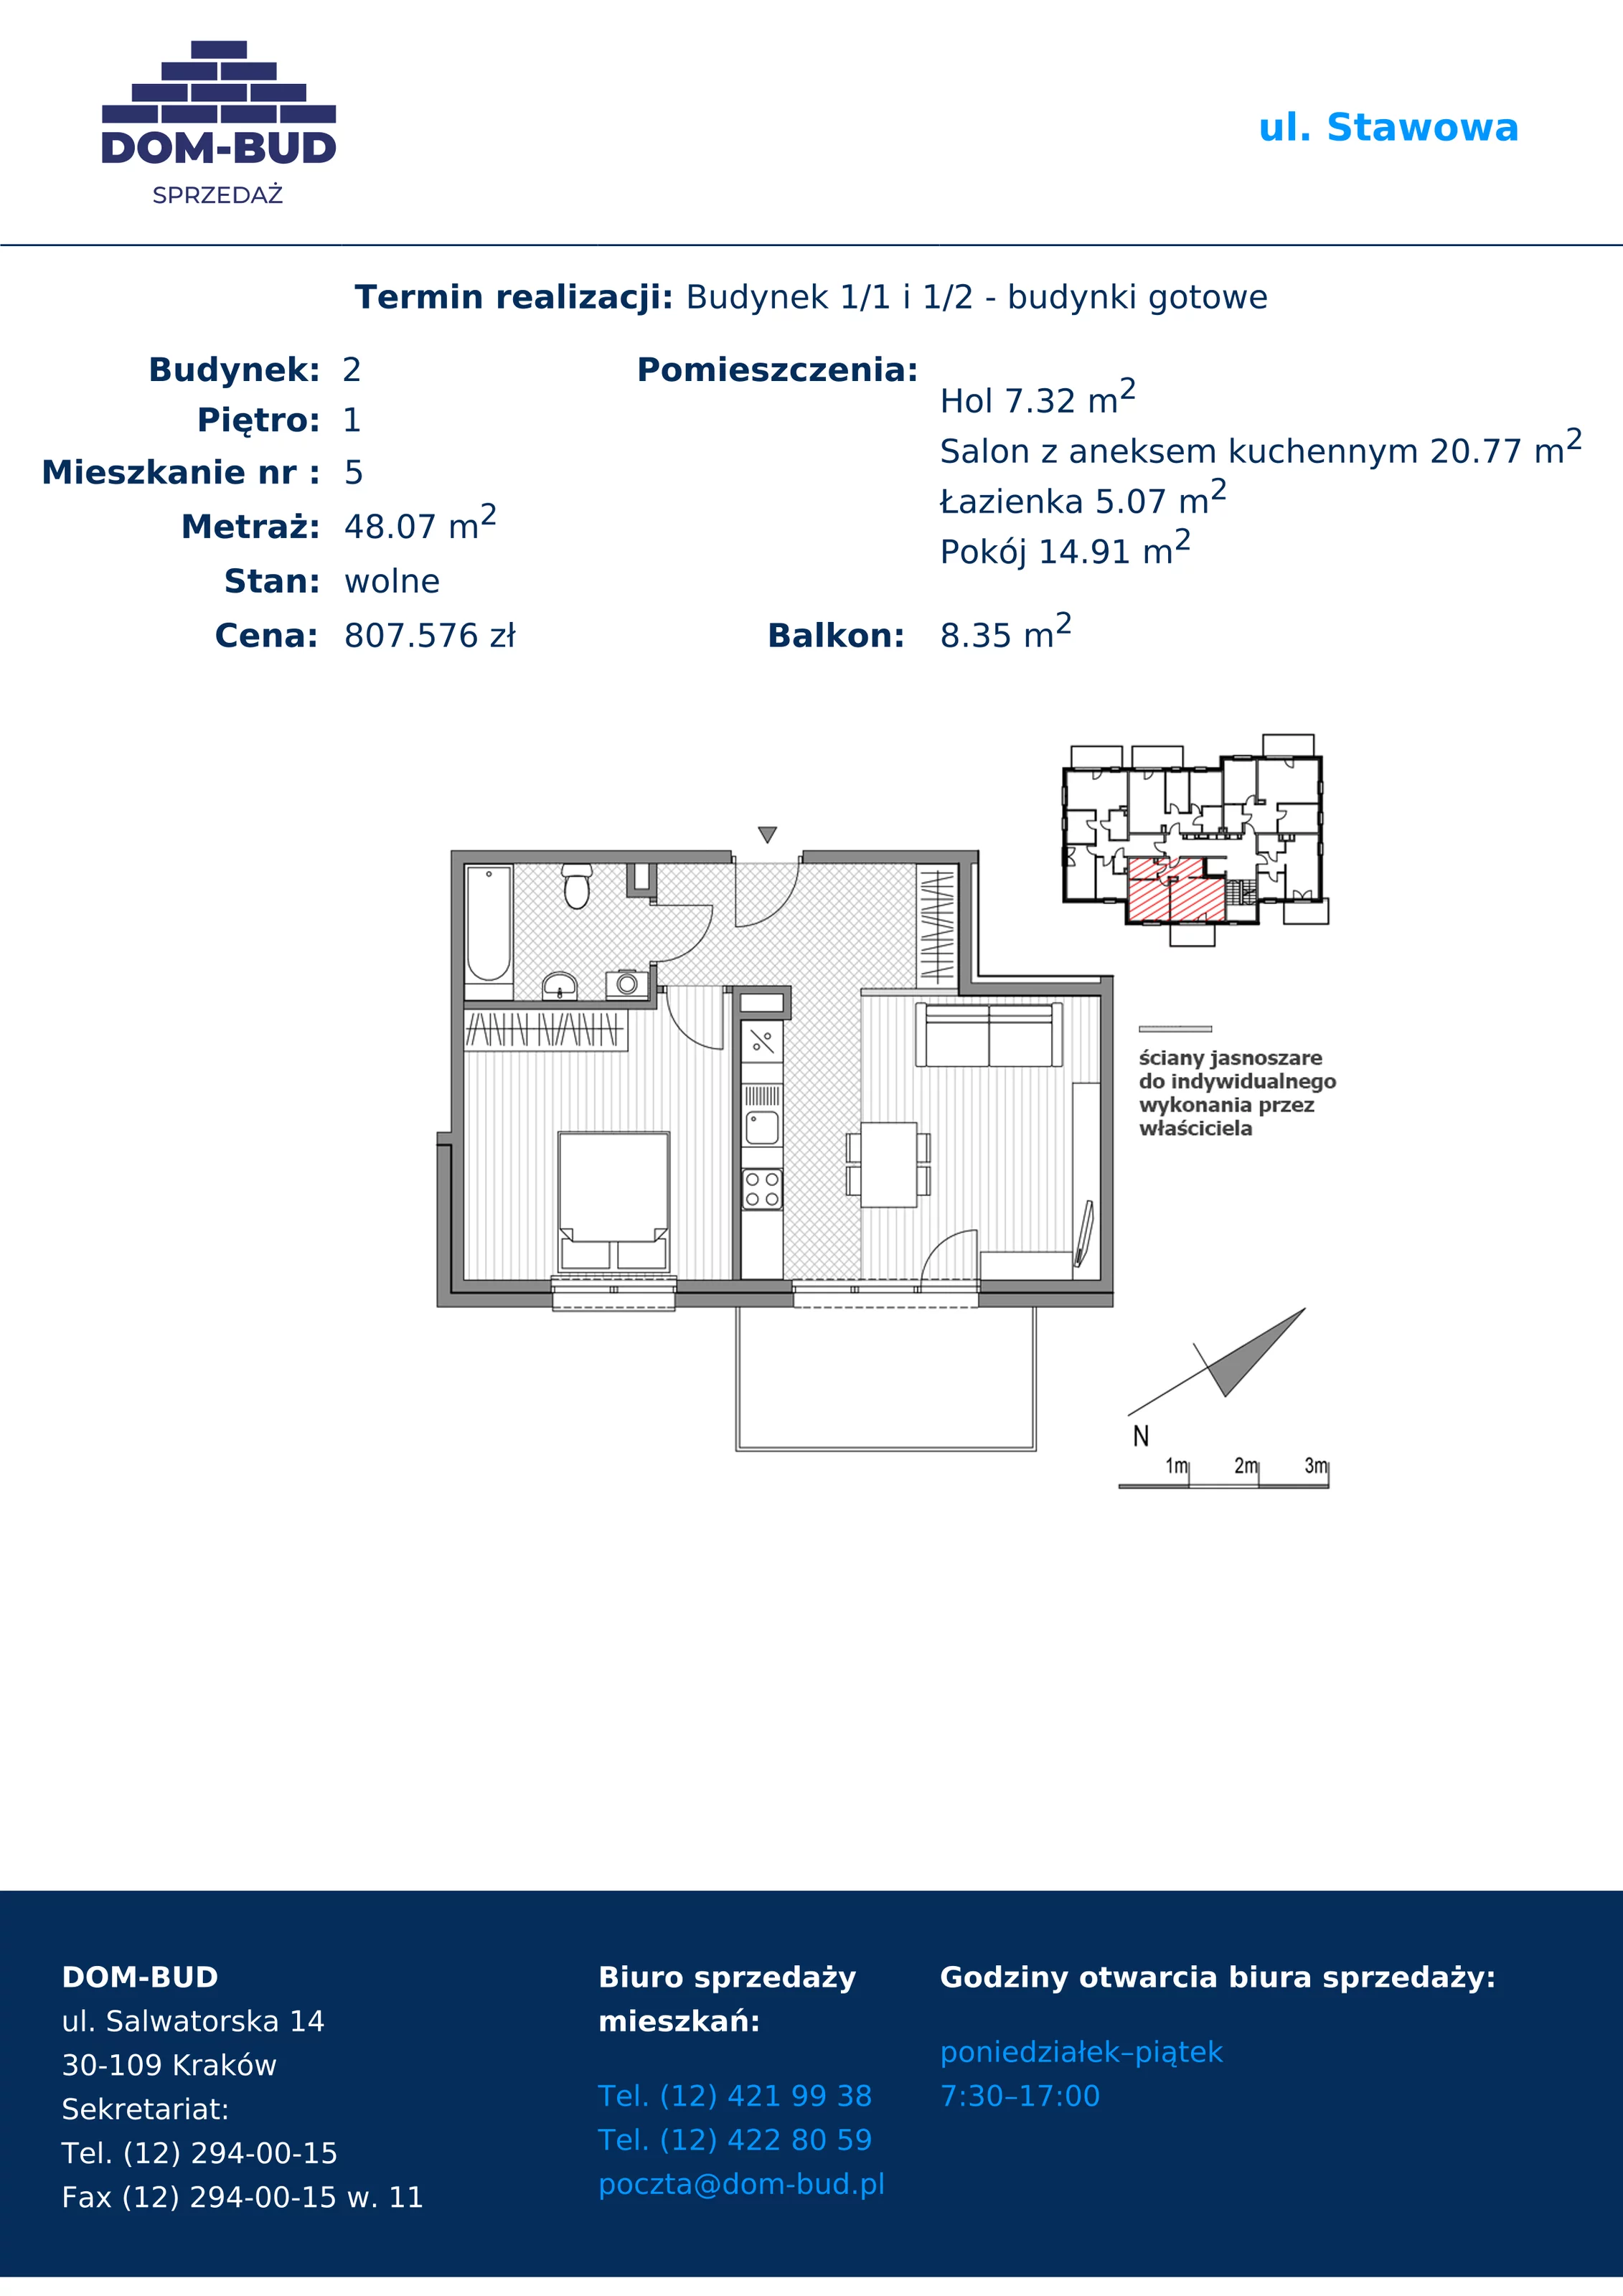 Mieszkanie 48,07 m², piętro 1, oferta nr 1/2-5, ul. Stawowa, Kraków, Prądnik Biały, Bronowice Wielkie, ul. Stawowa 242